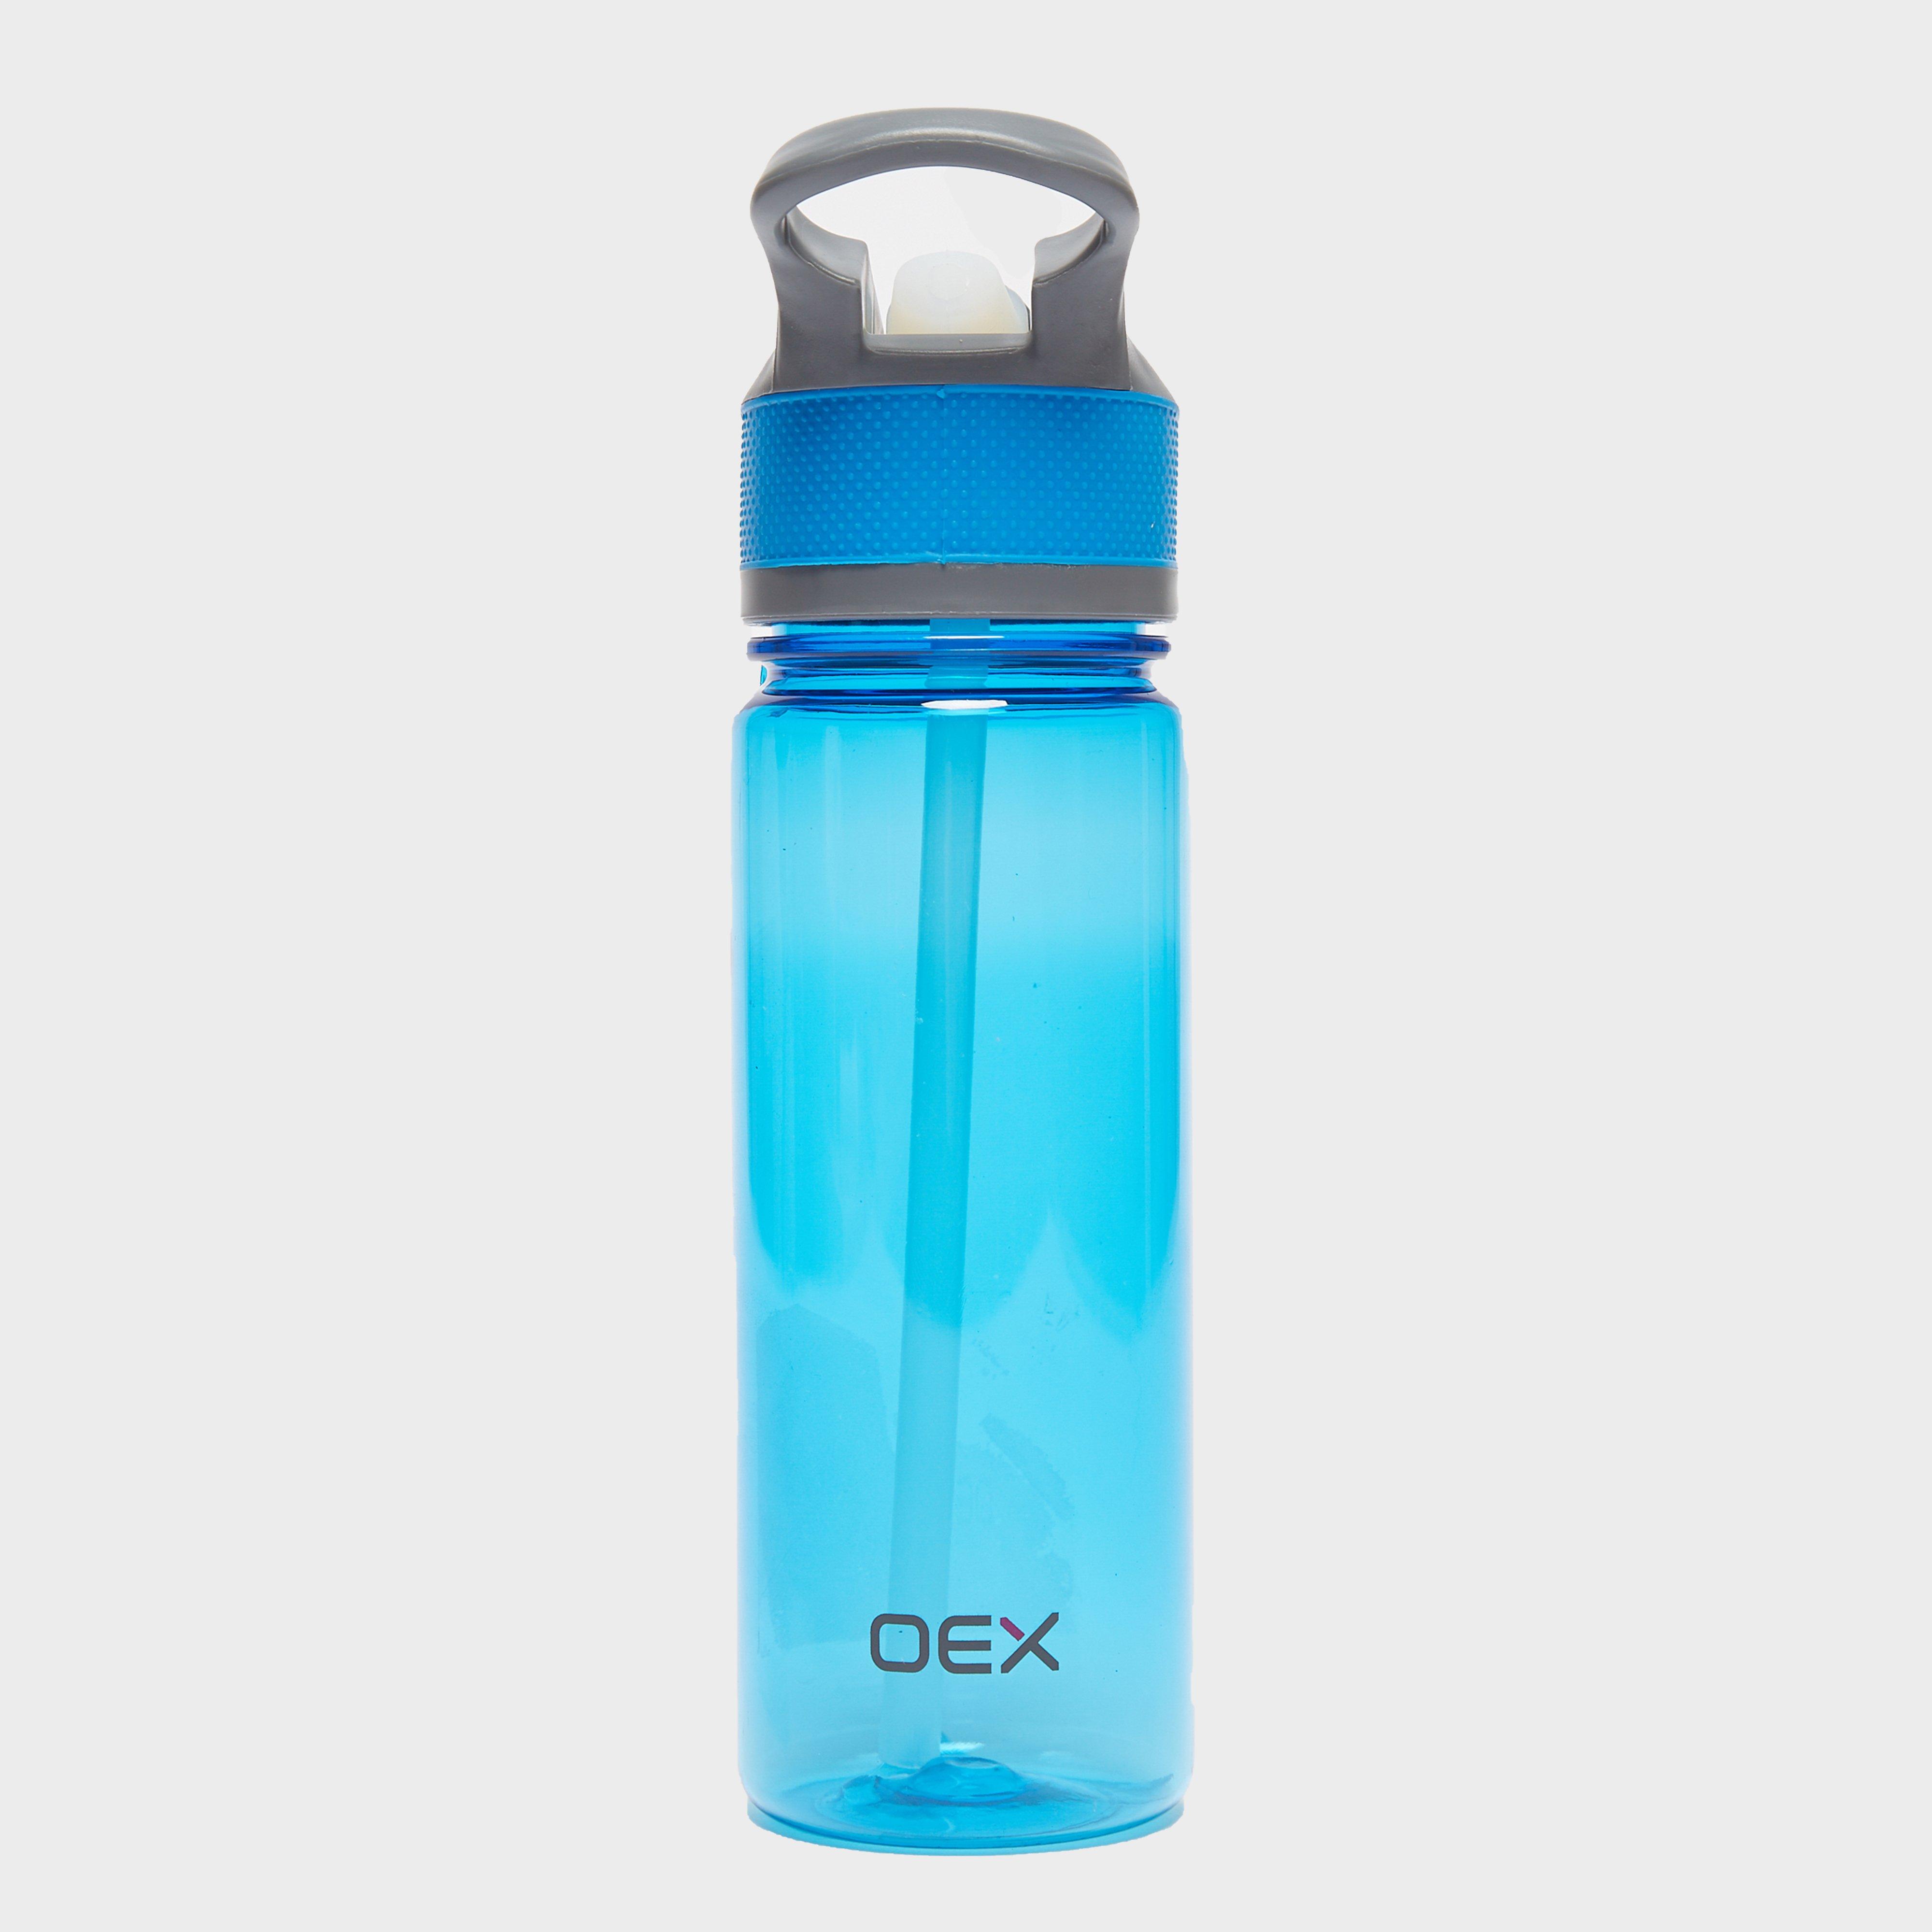 Oex Spout Water Bottle - Blue, Blue